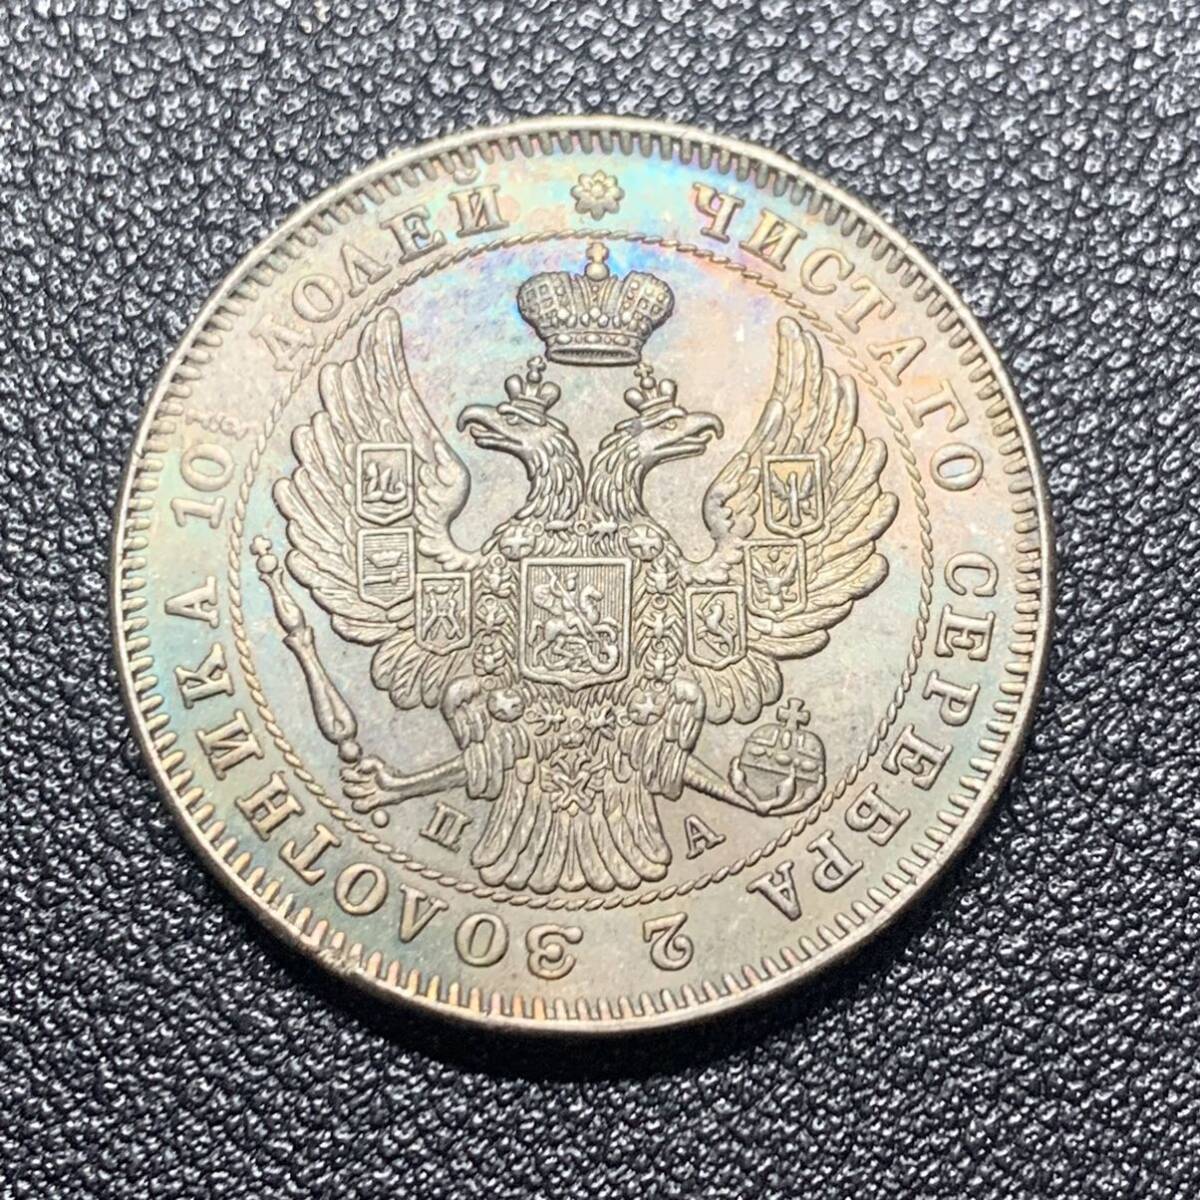 銀貨 古銭 1846年 ロシア帝国 ニコライ1世 双頭の鷲 国章 クラウン 中型 コイン 硬貨の画像1